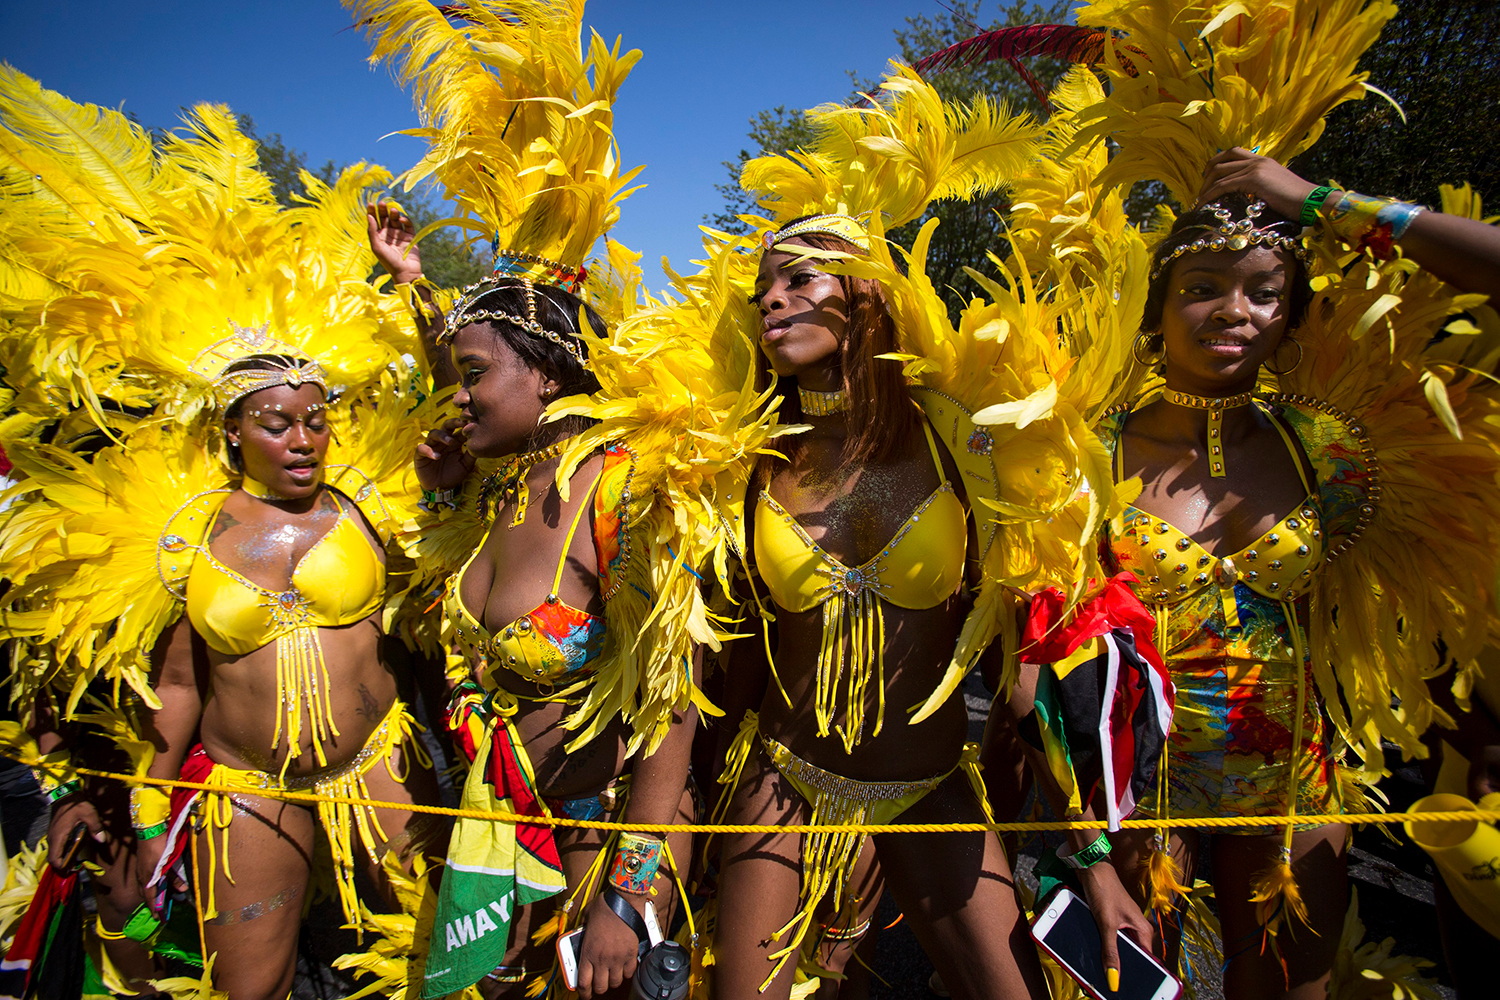 Brooklyn se llena de alegría y color en el Día de las Indias Occidentales